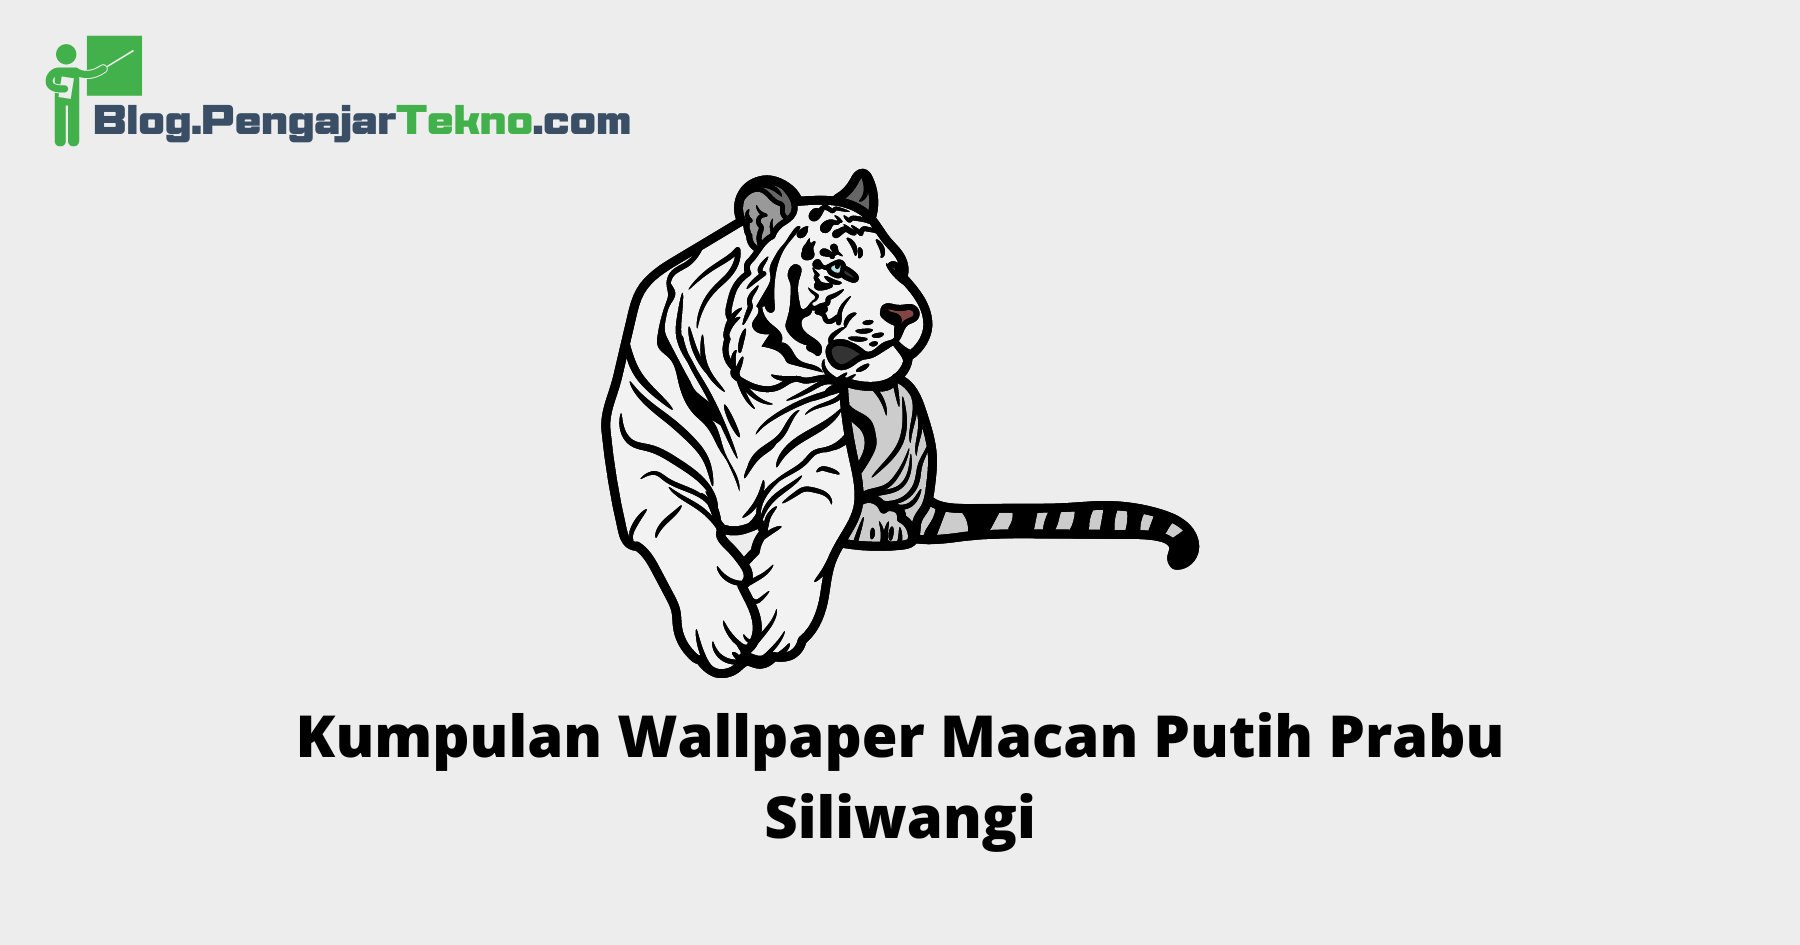 Wallpaper Macan Putih Prabu Siliwangi